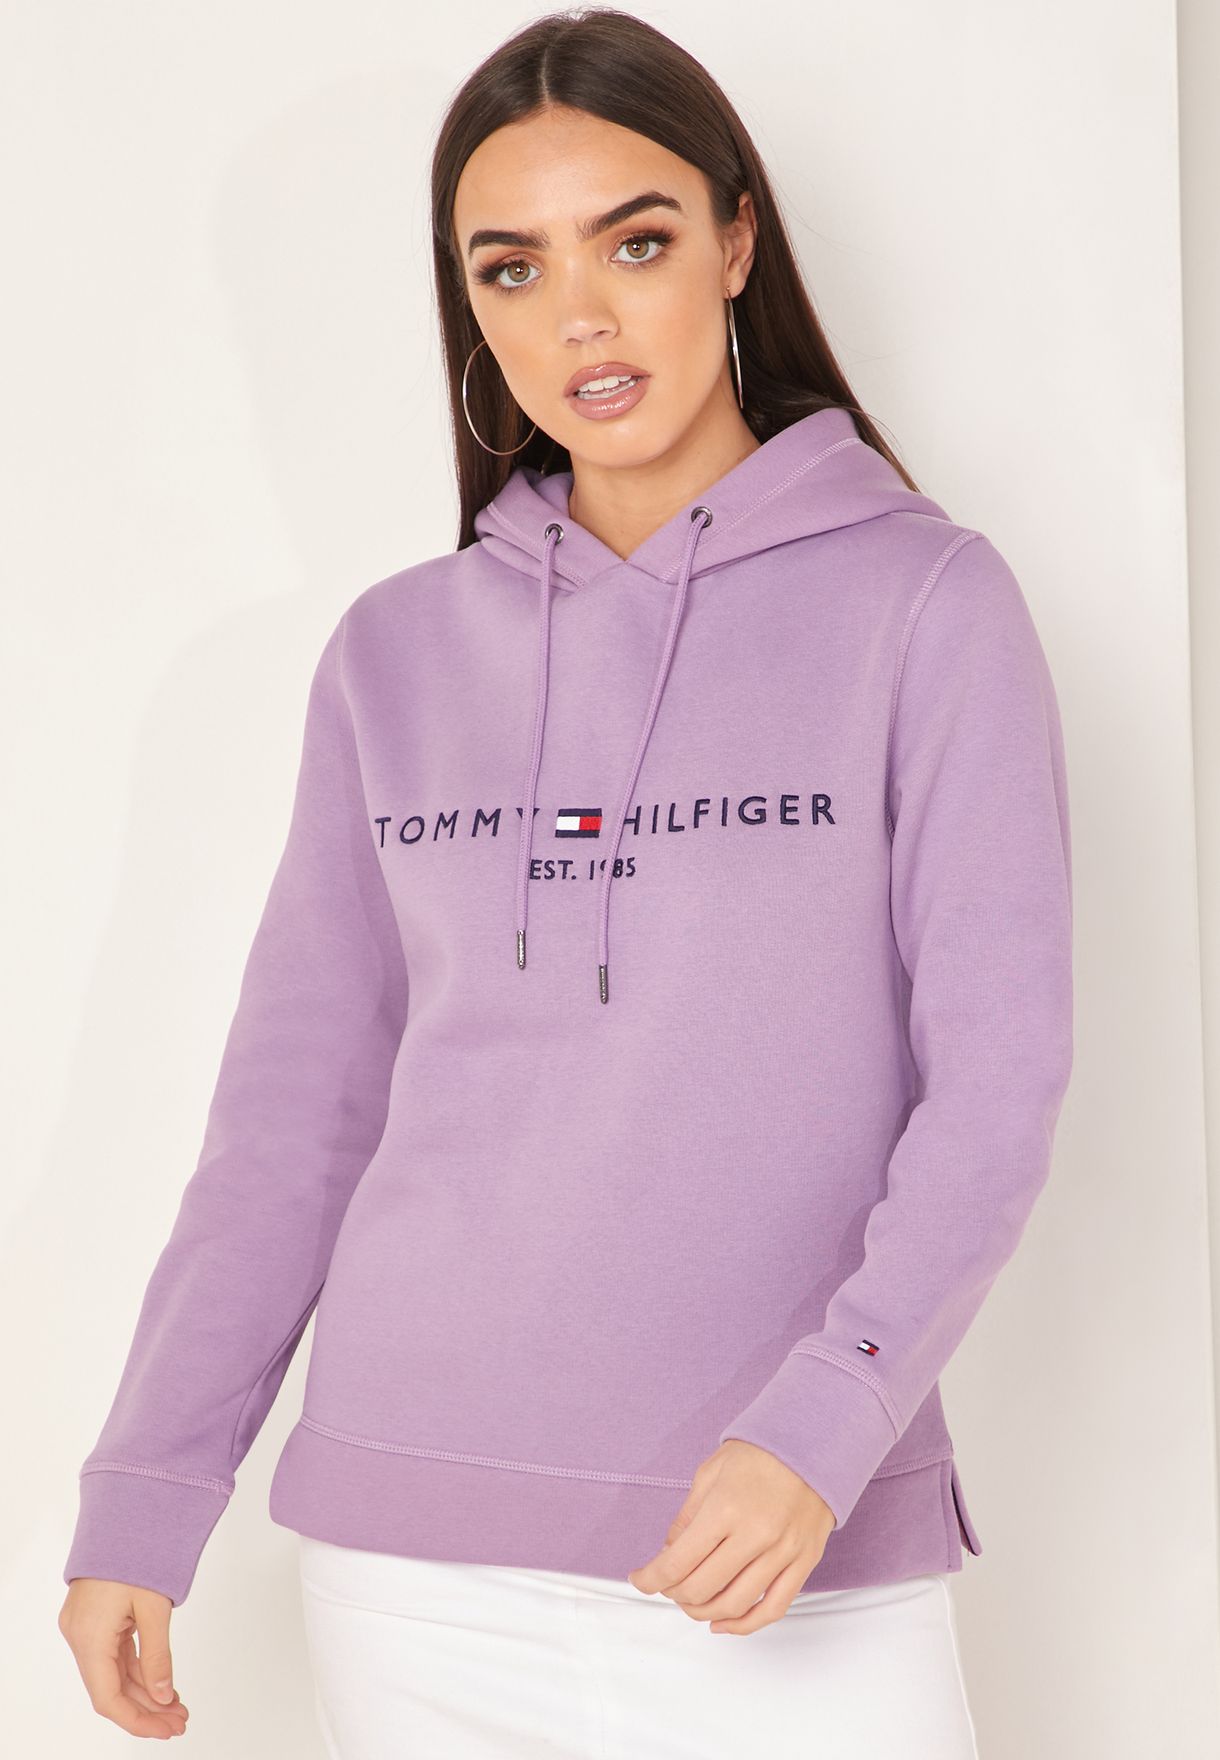 hilfiger hoodie womens